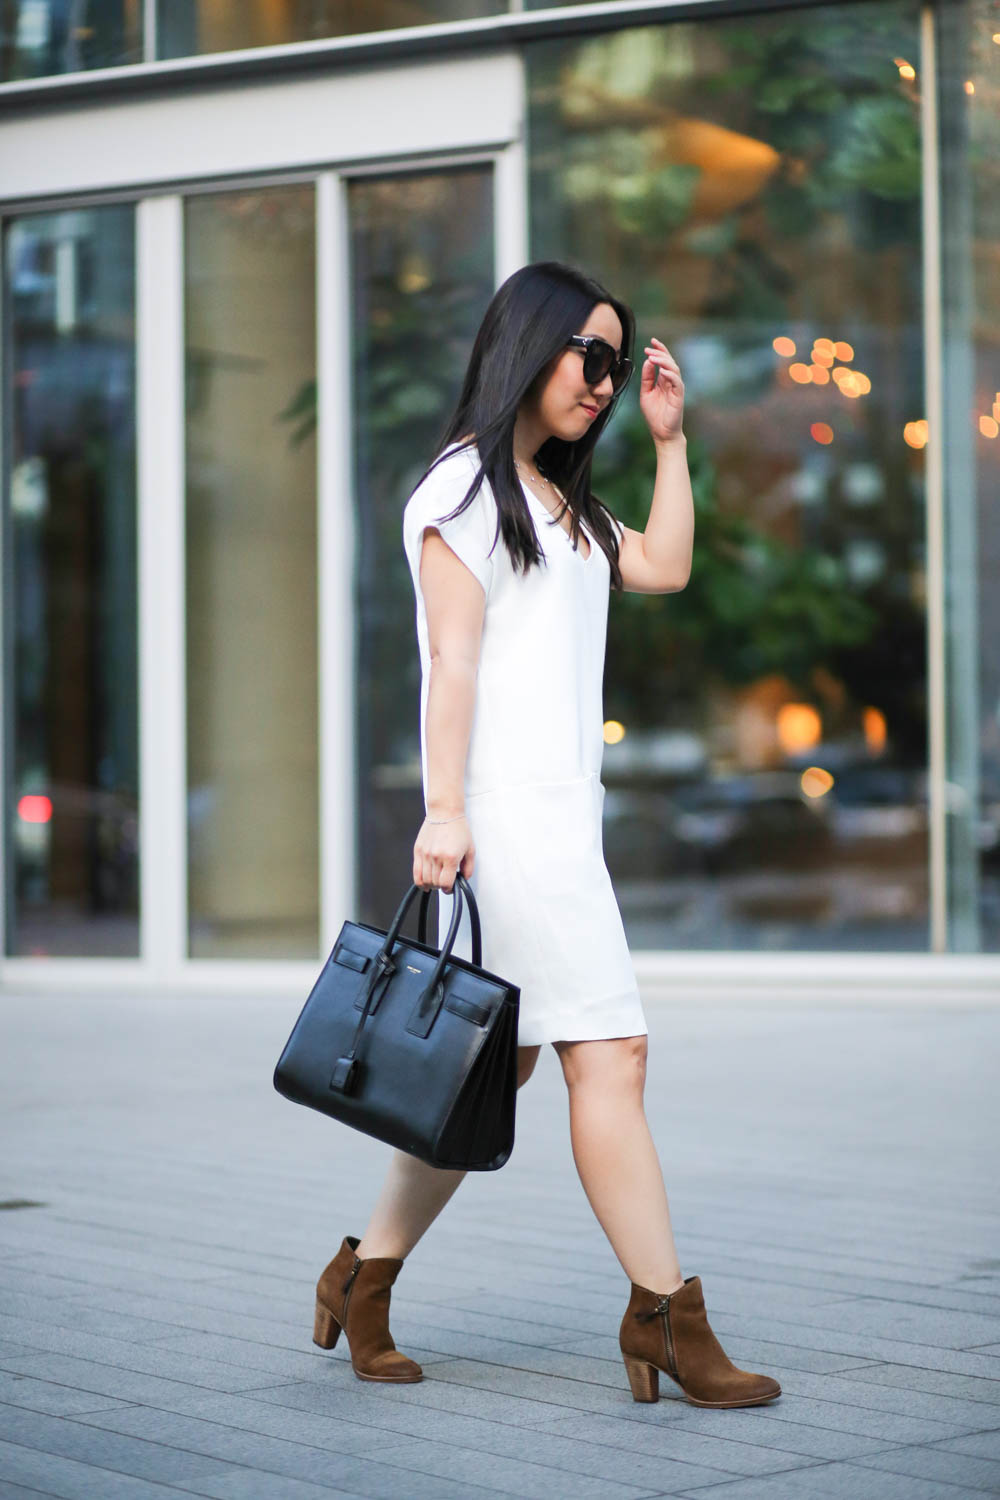 Vancouver Style Blogger Jenny Liu. Outfit: Vince dress, Cole Haan ankle boots, Saint Laurent sac de jour bag, and Celine sunglasses